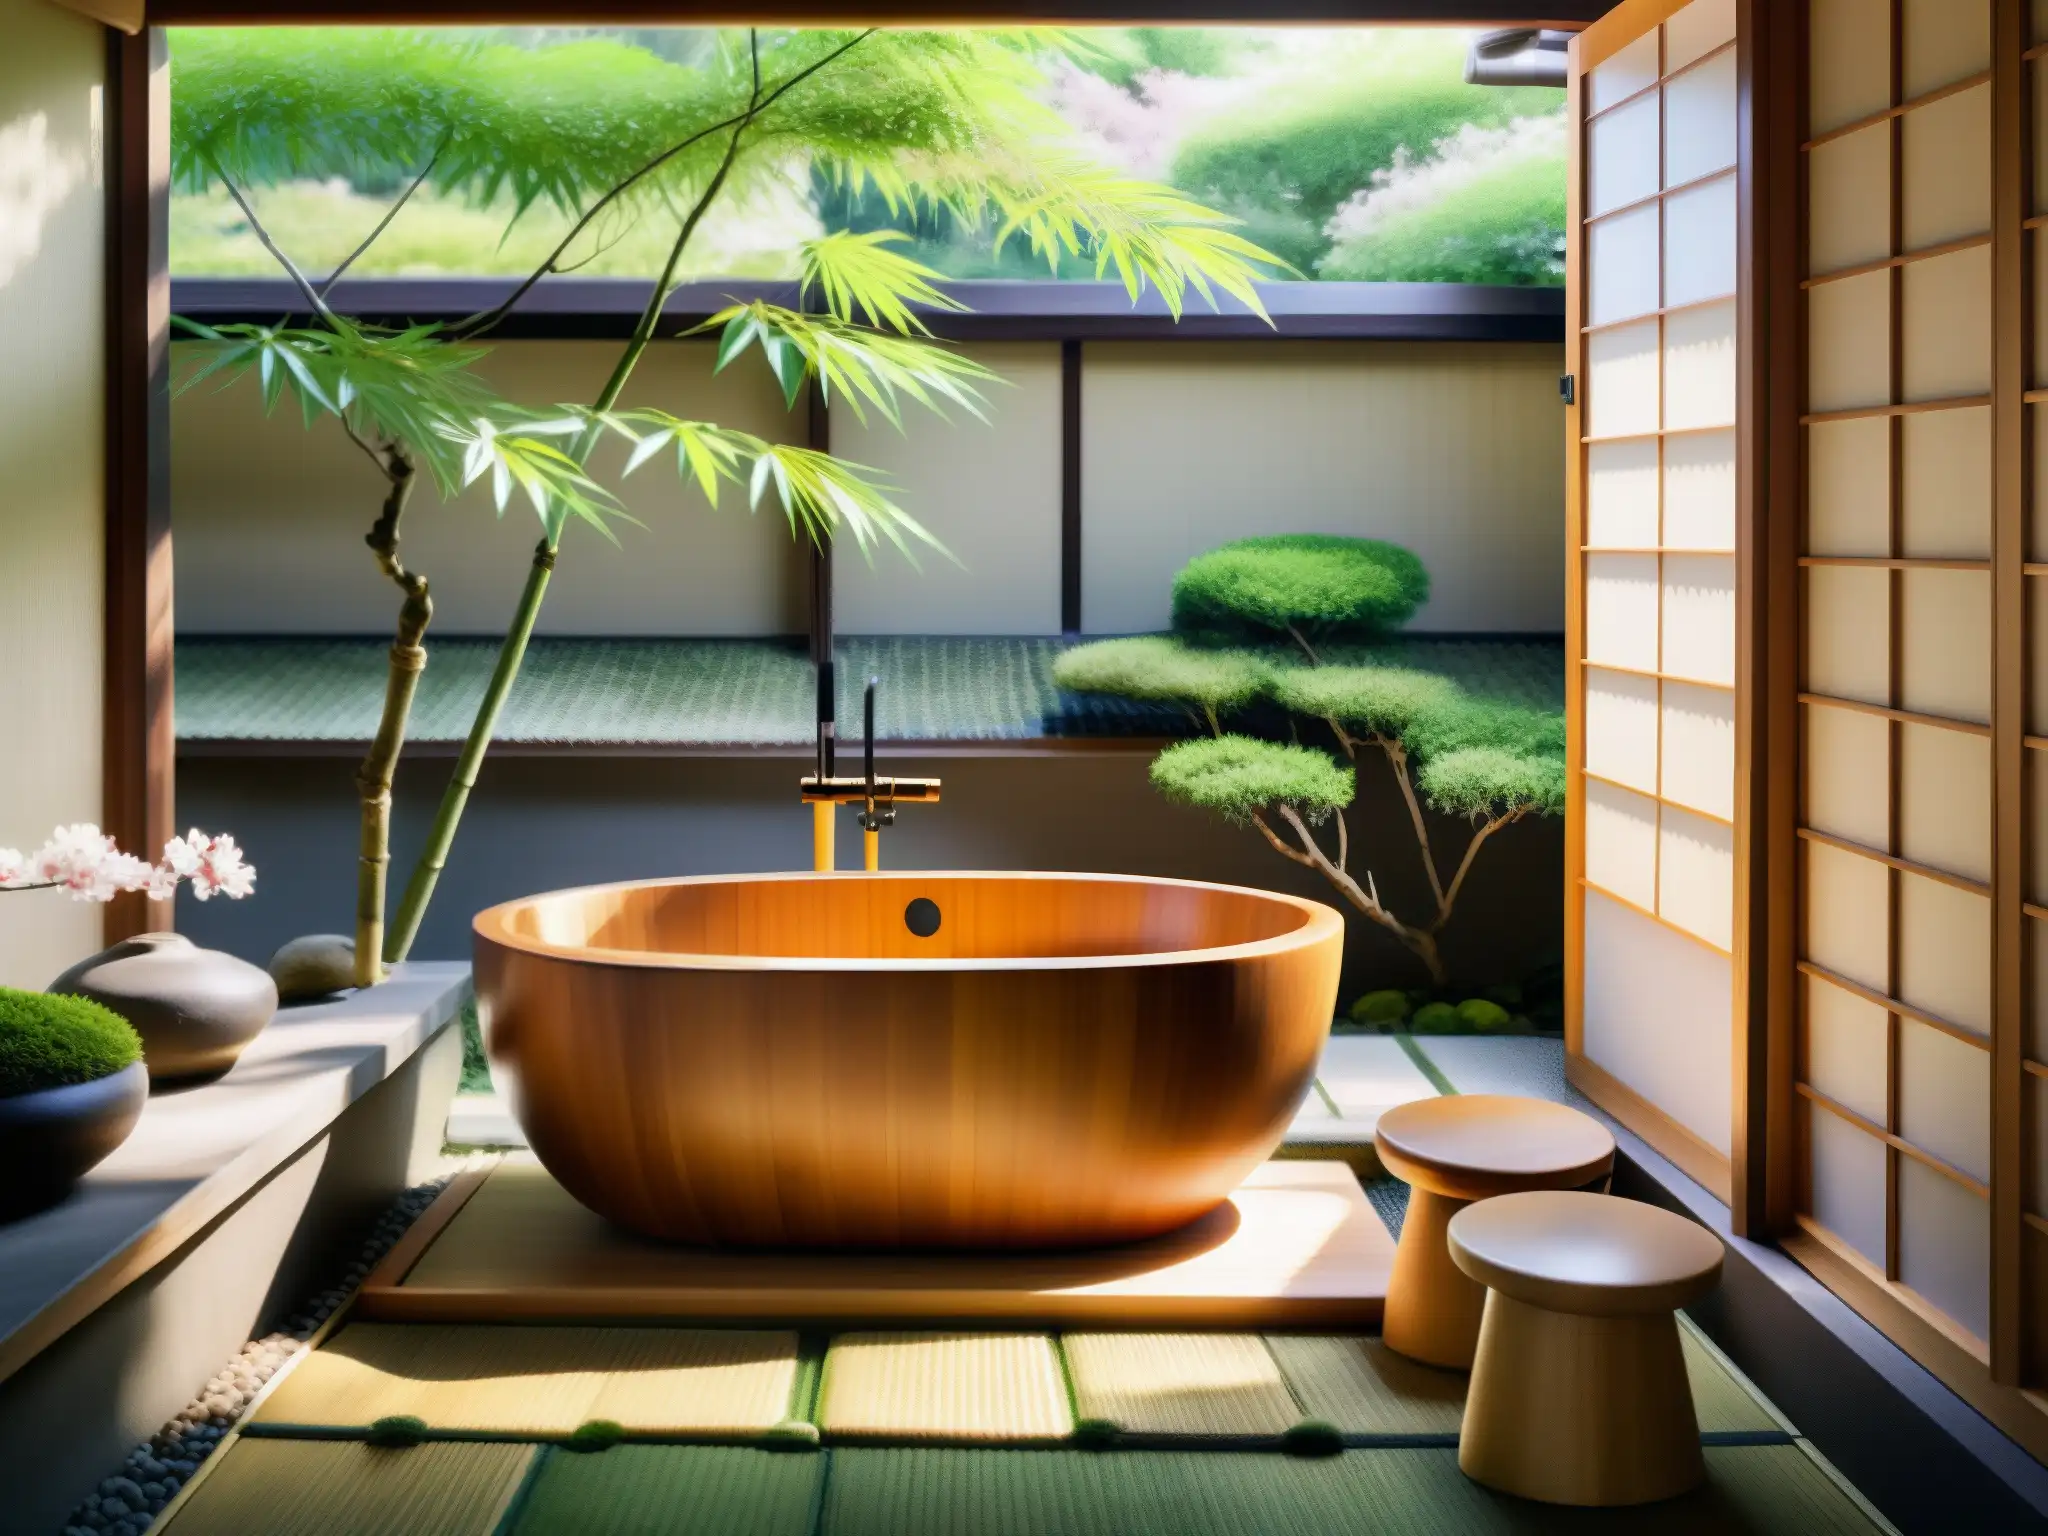 Baño japonés tradicional con tina de madera, taburete y cucharón de bambú en jardín tranquilo con árboles de cerezo en flor